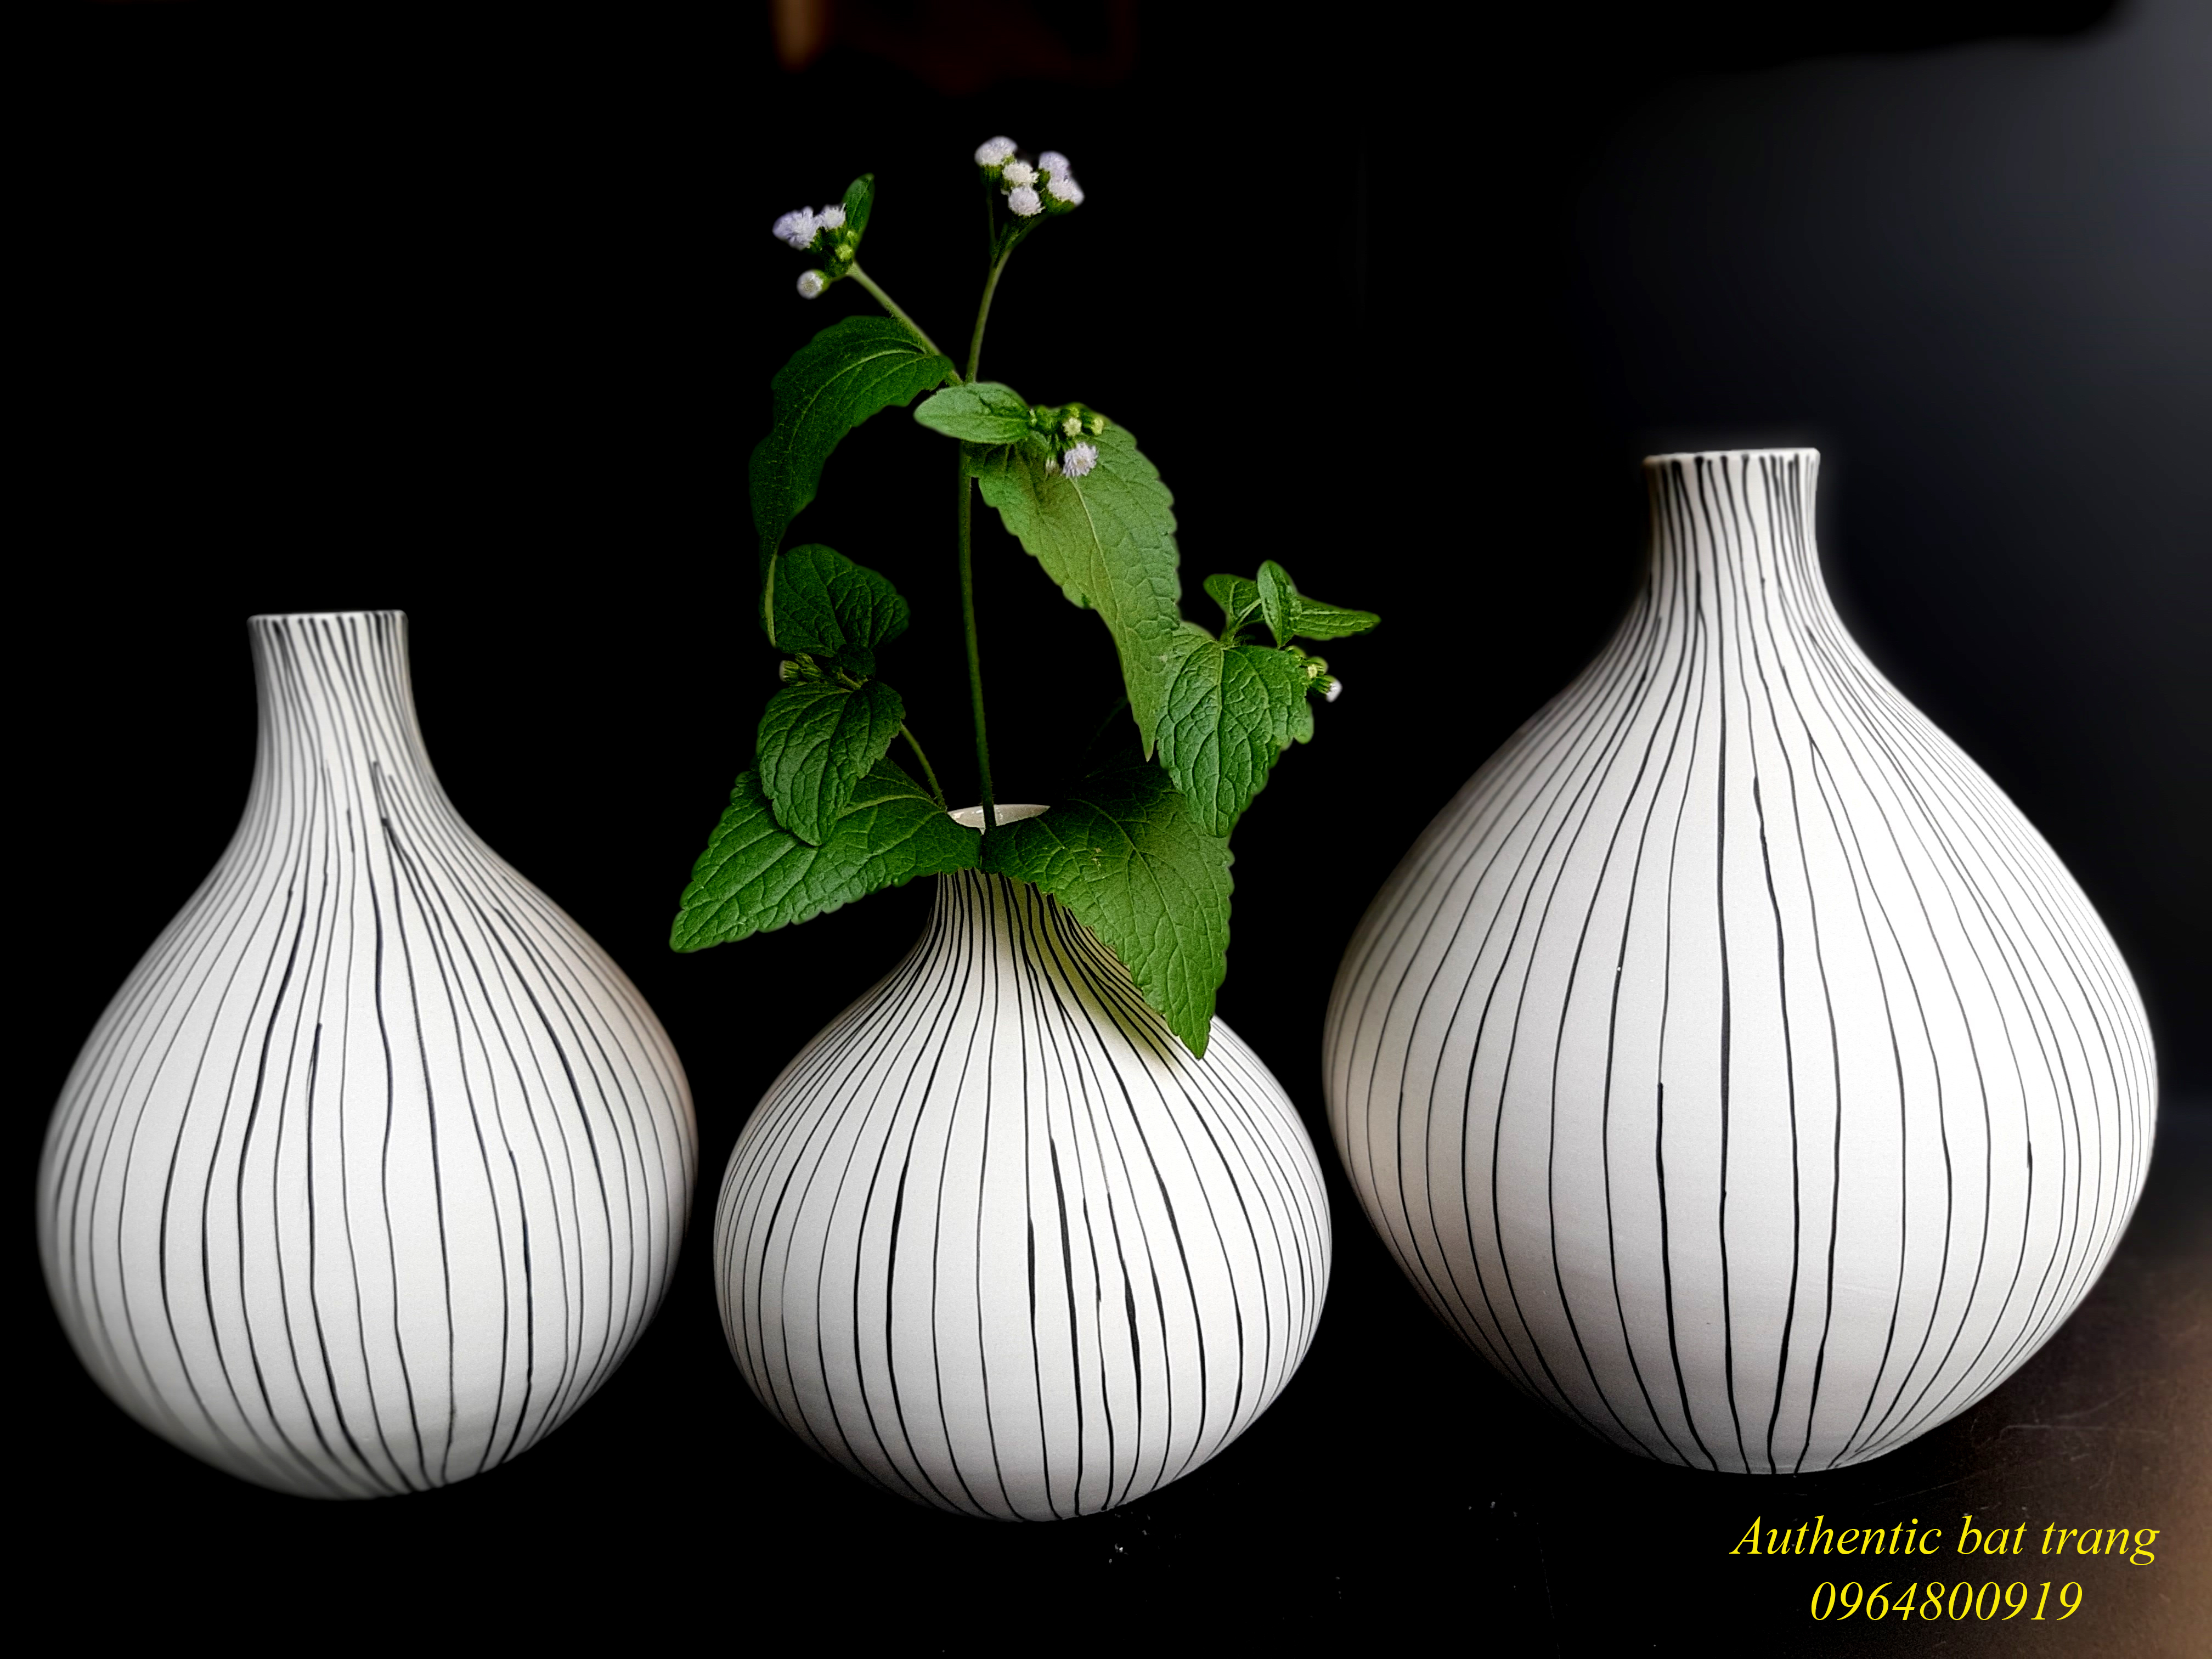 Decor vases set/ Bộ bình gốm kẻ sọc, trang trí nhà cửa, sản xuất tại xưởng gốm sứ Authentic bat trang